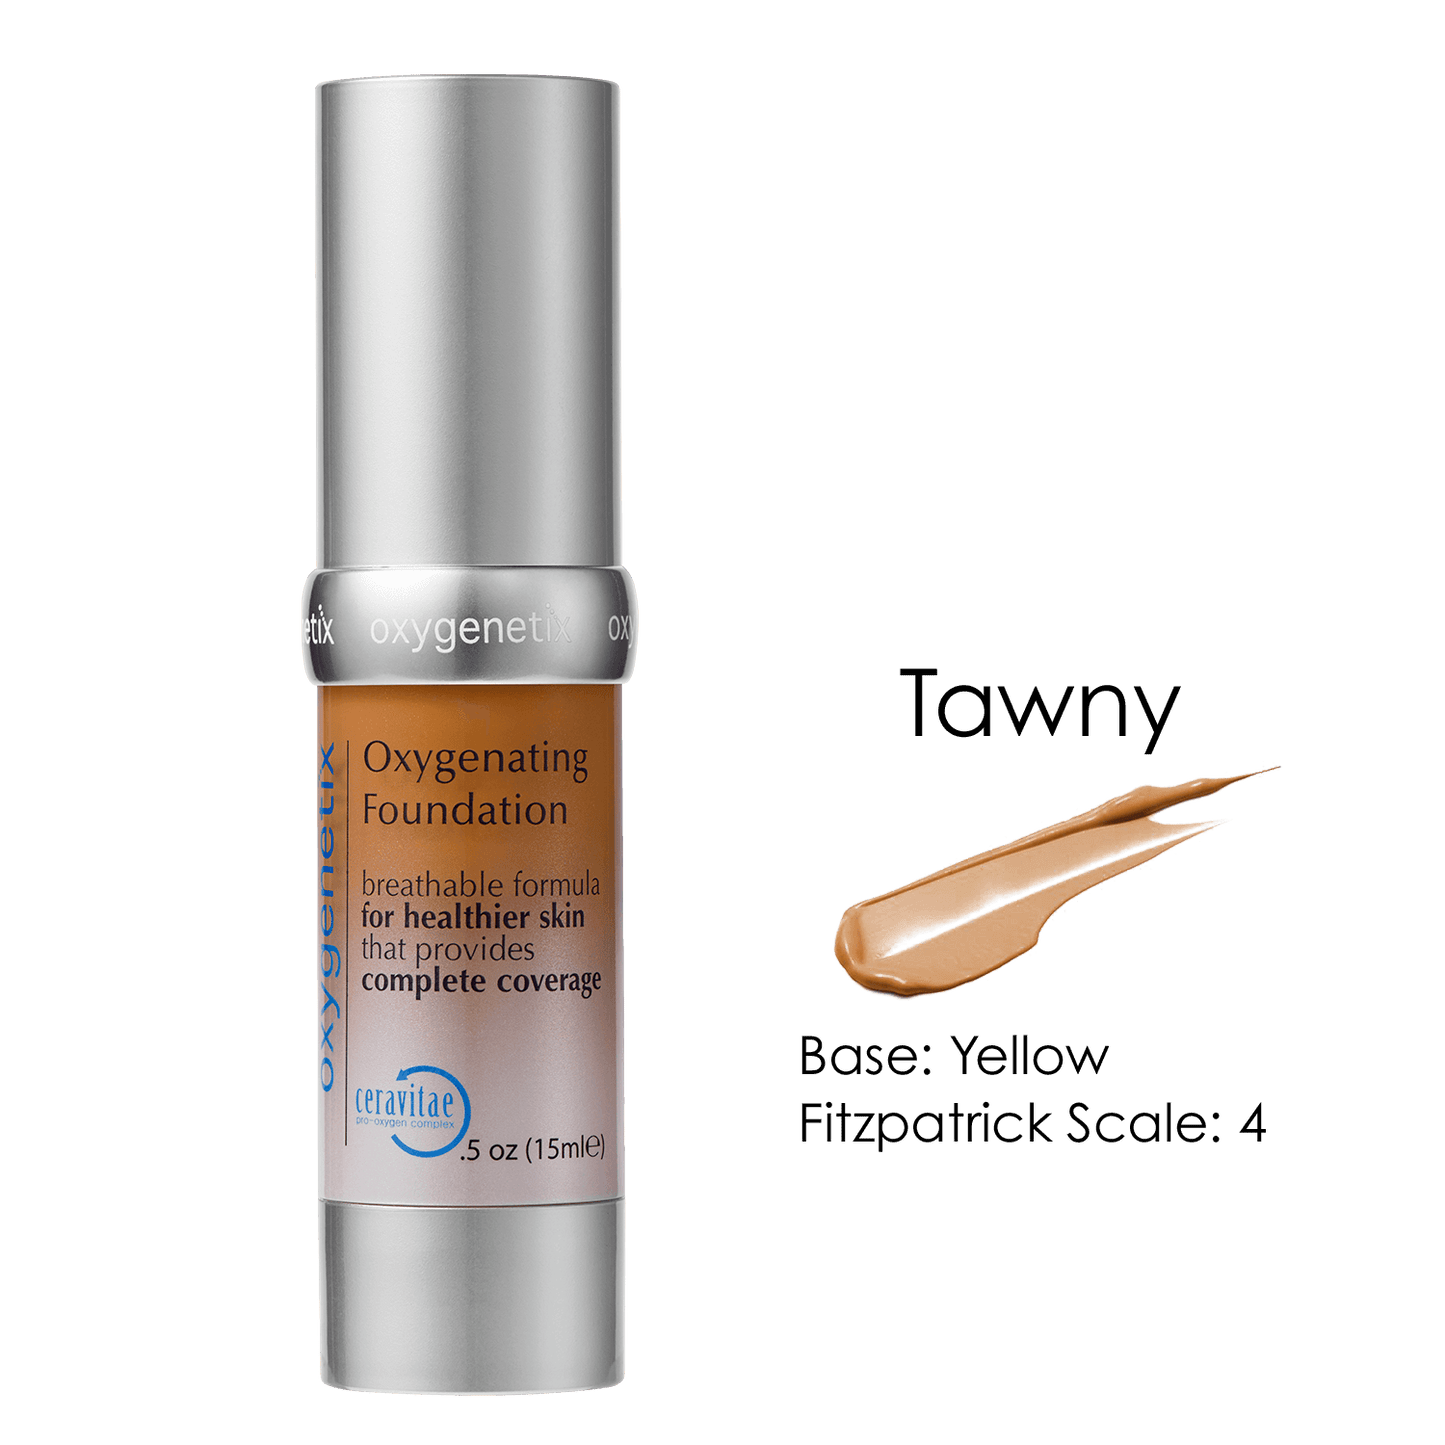 Oxygenetix Oxygenating Foundation - SPF 30 - Tawny